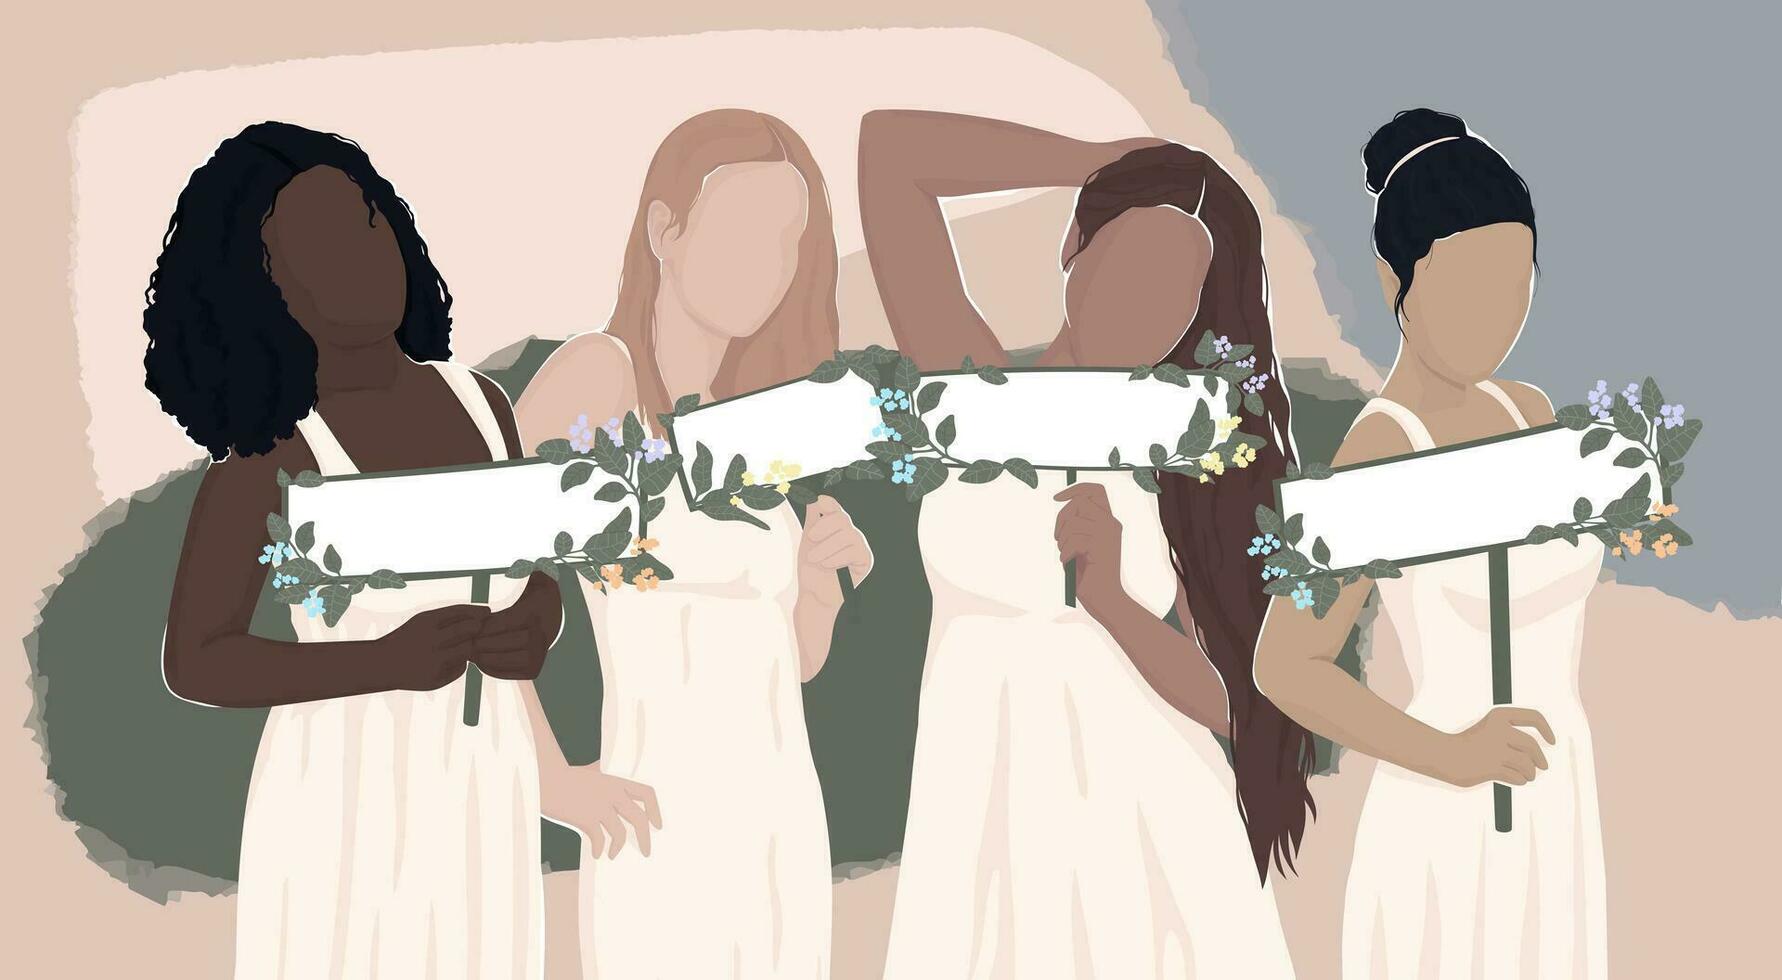 quattro diverso donne nel bianca Vestiti siamo Tenere vuoto banner decorato con fiori per il tuo testo. vettore leggero naturale moderno piatto illustrazione. per striscione, cartolina, manifesto, rivista coperchio.